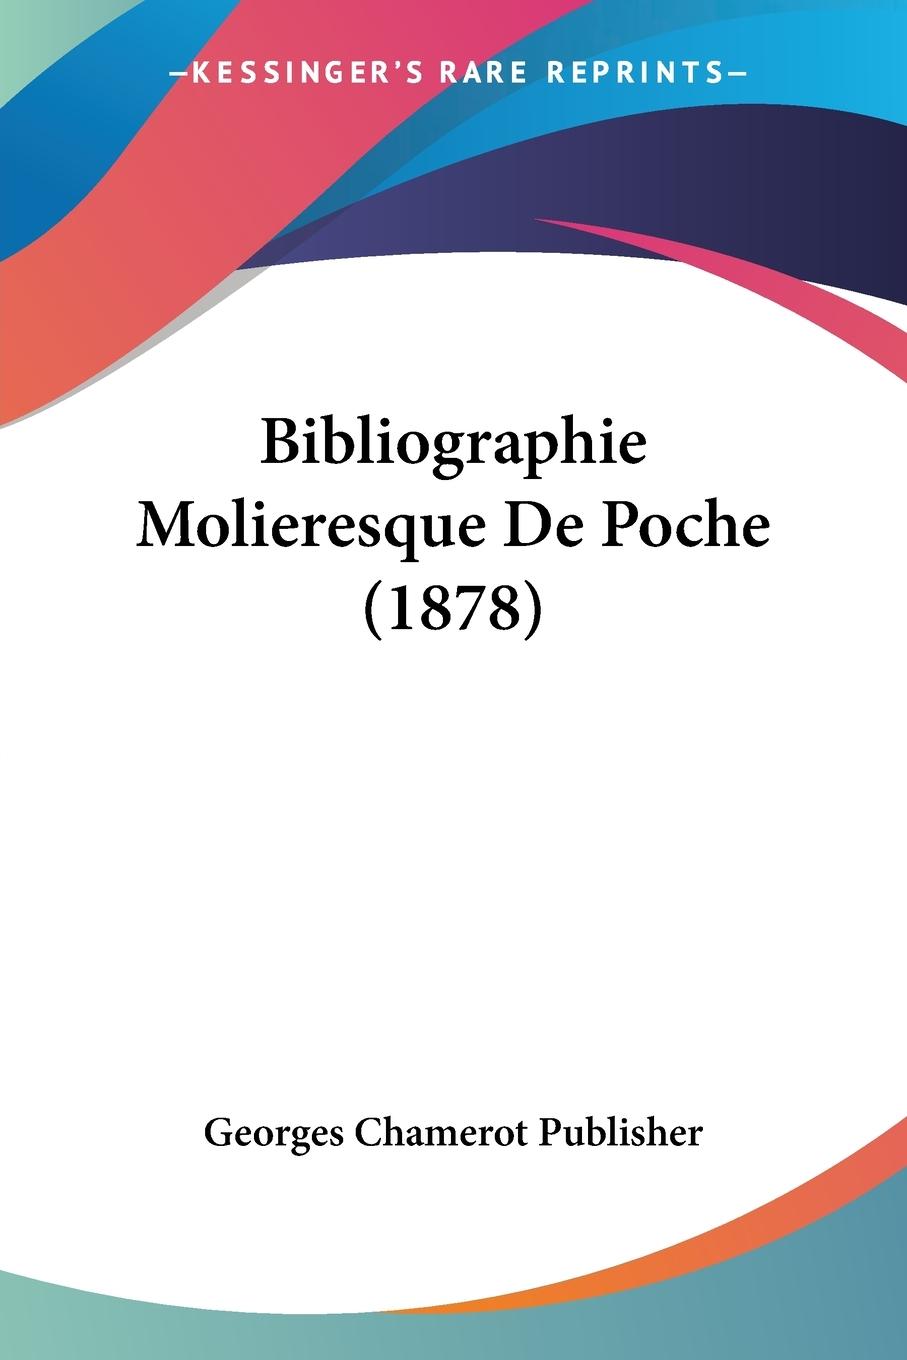 Bibliographie Molieresque De Poche (1878) - Georges Chamerot Publisher